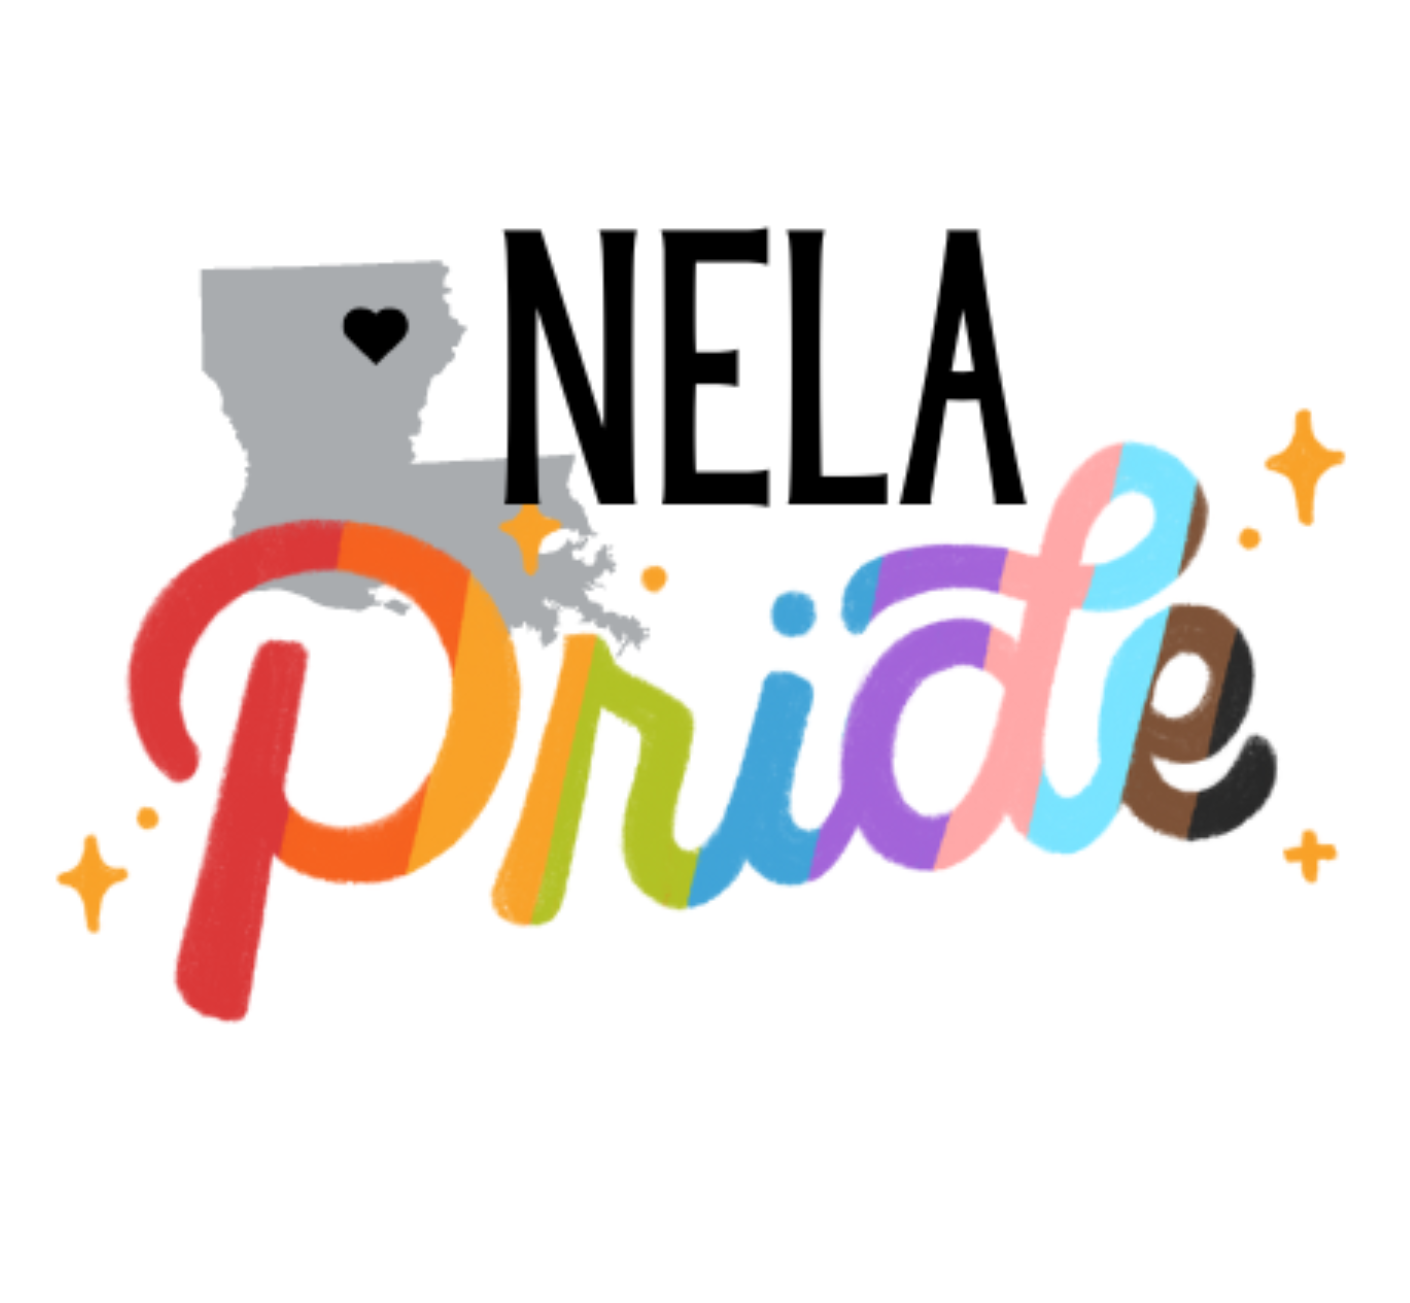 NELA Pride